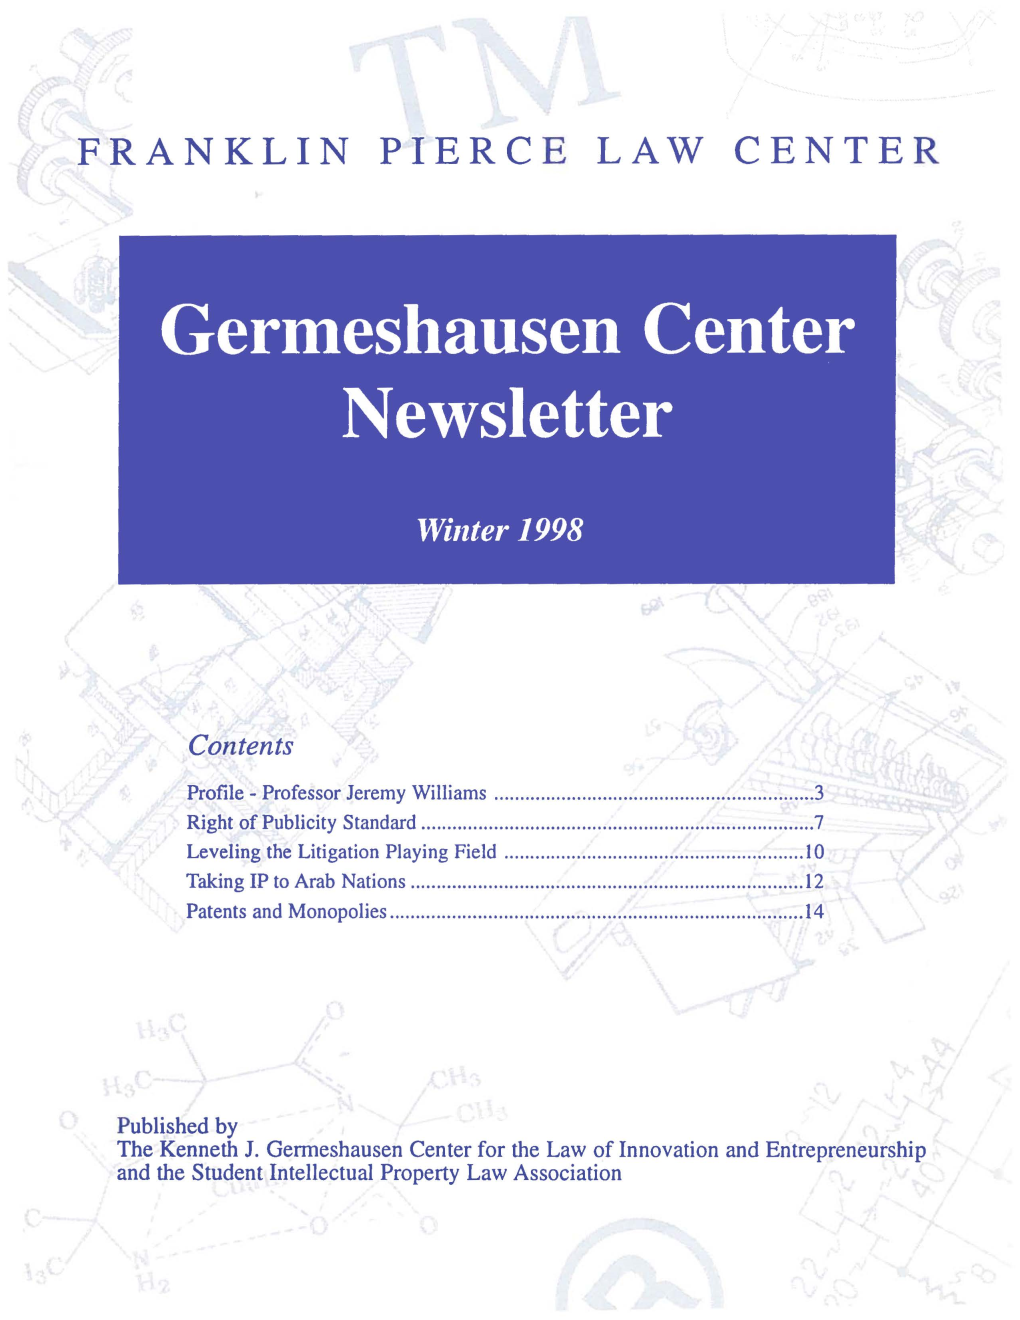 Germeshausen Center Newsletter